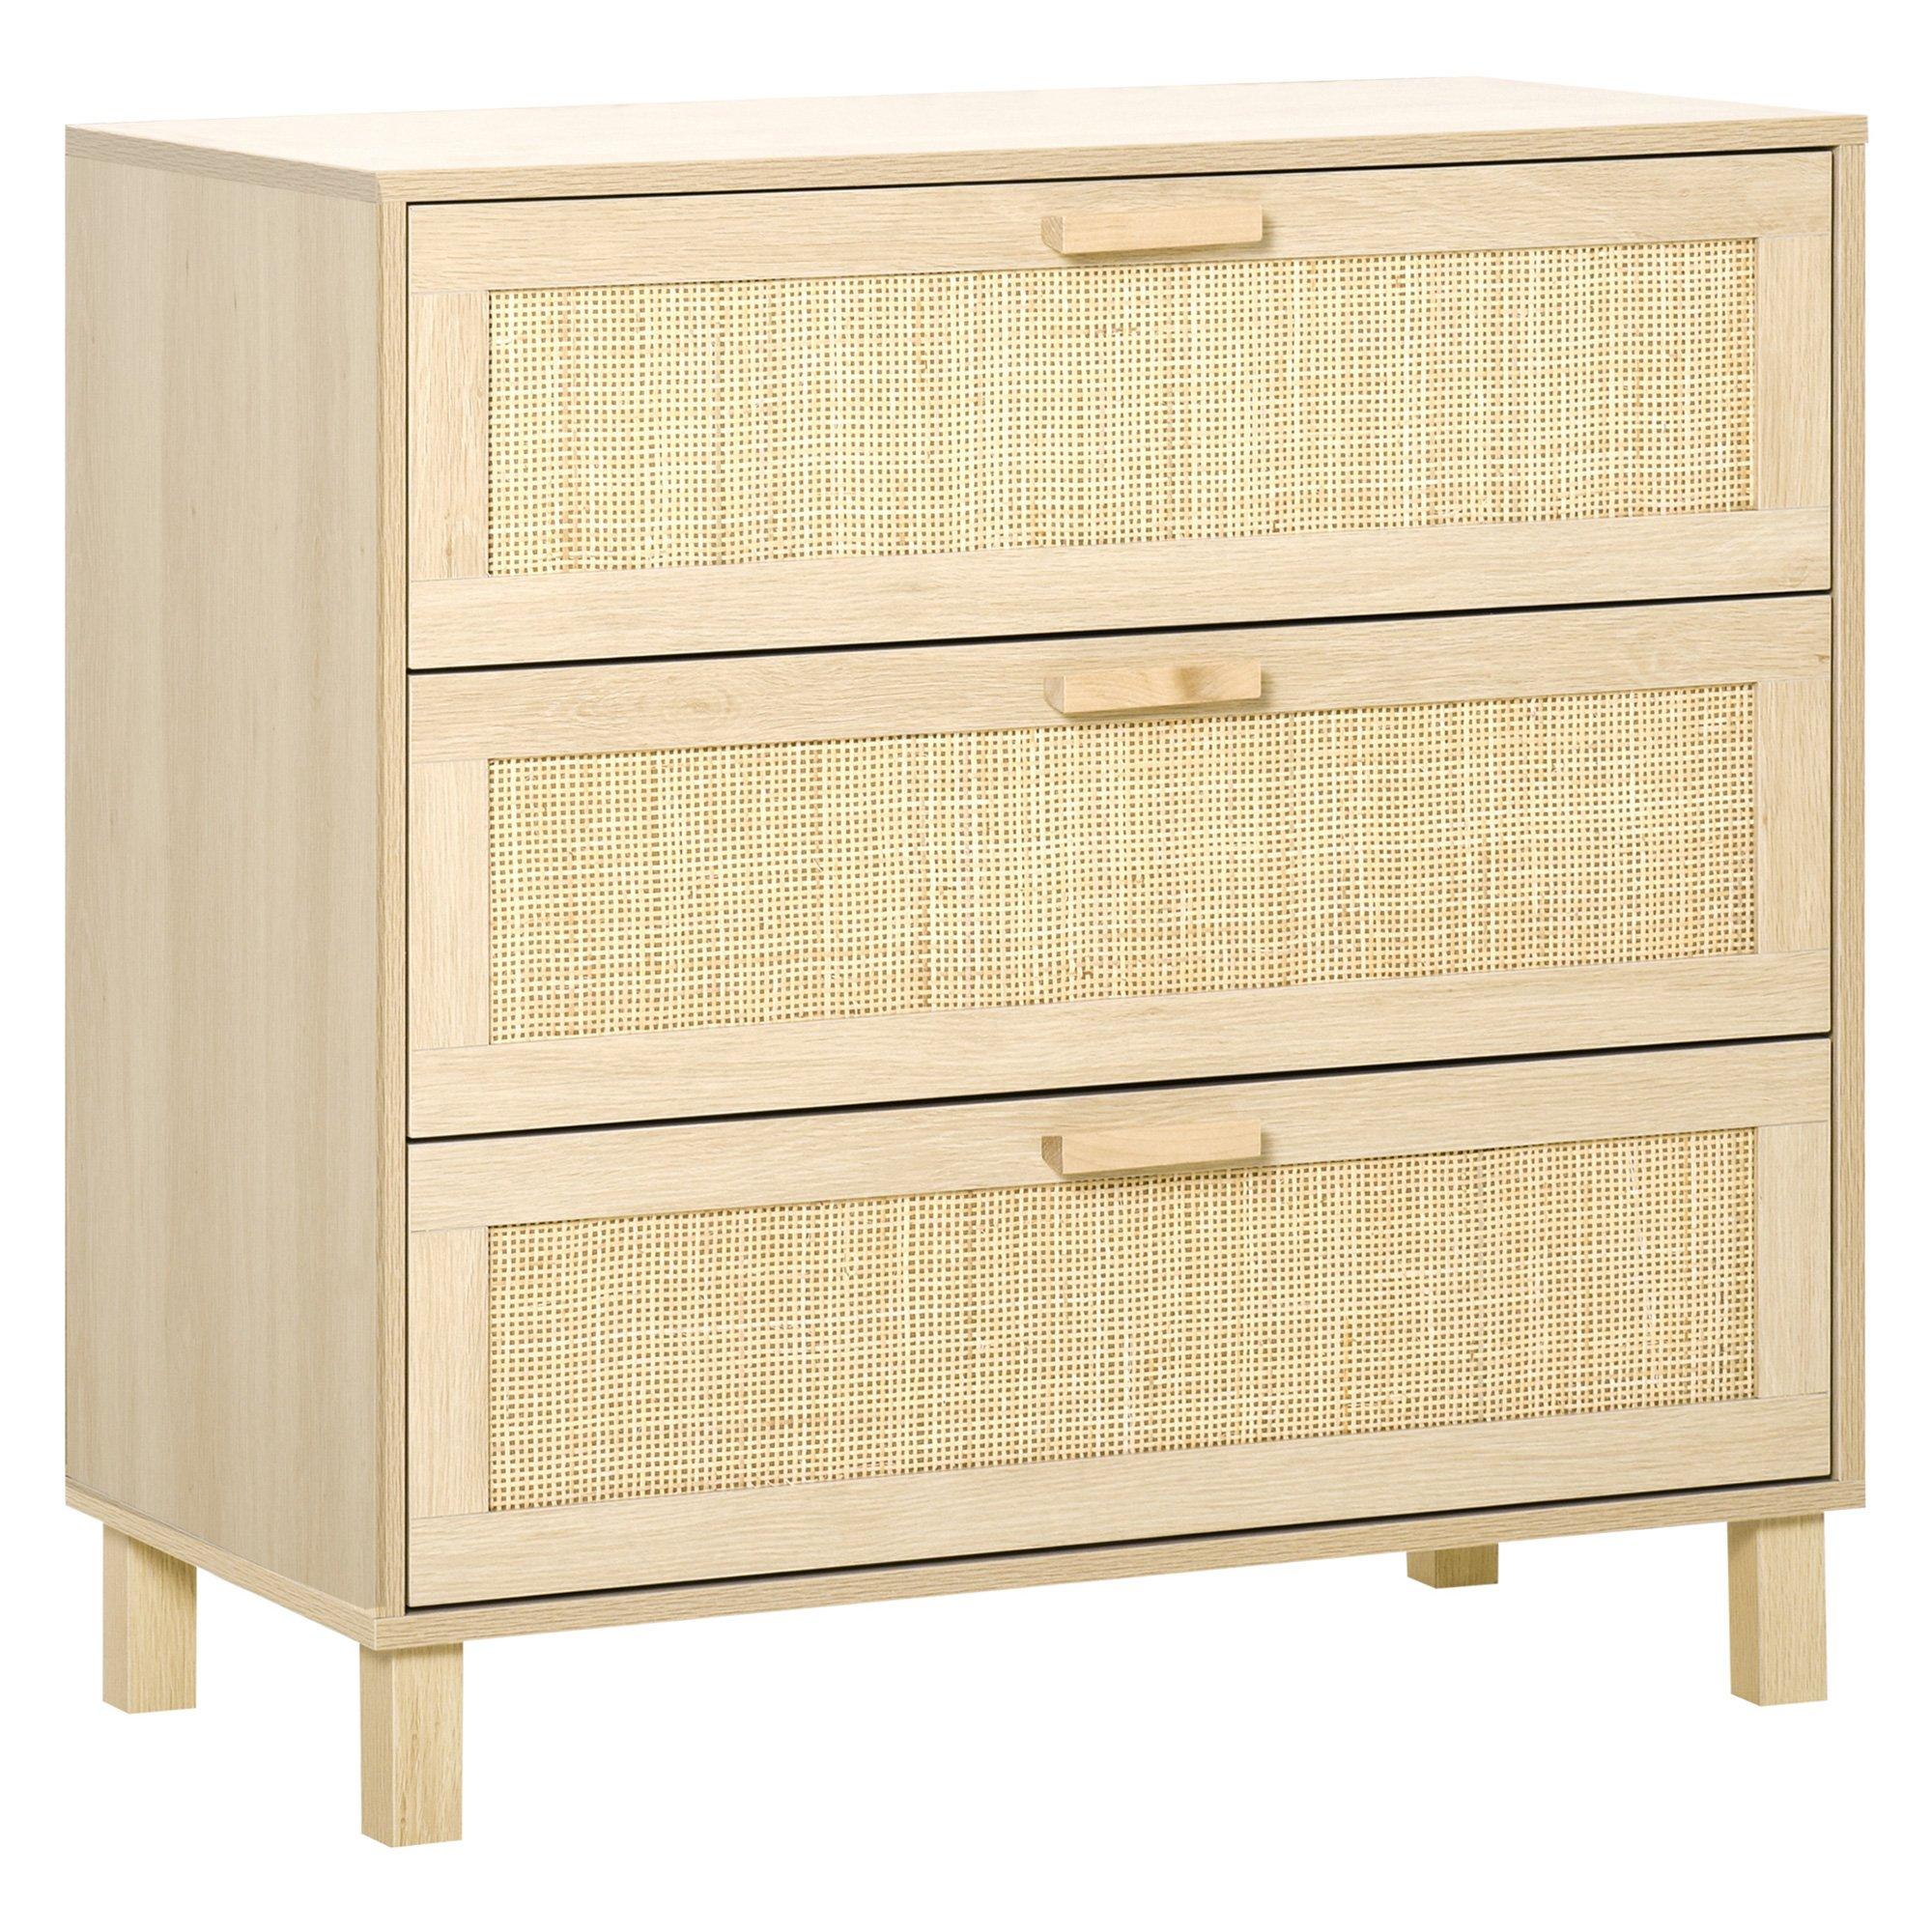 3 Drawer Cabinet Storage Cupboard Wooden Freestanding Organiser Unit